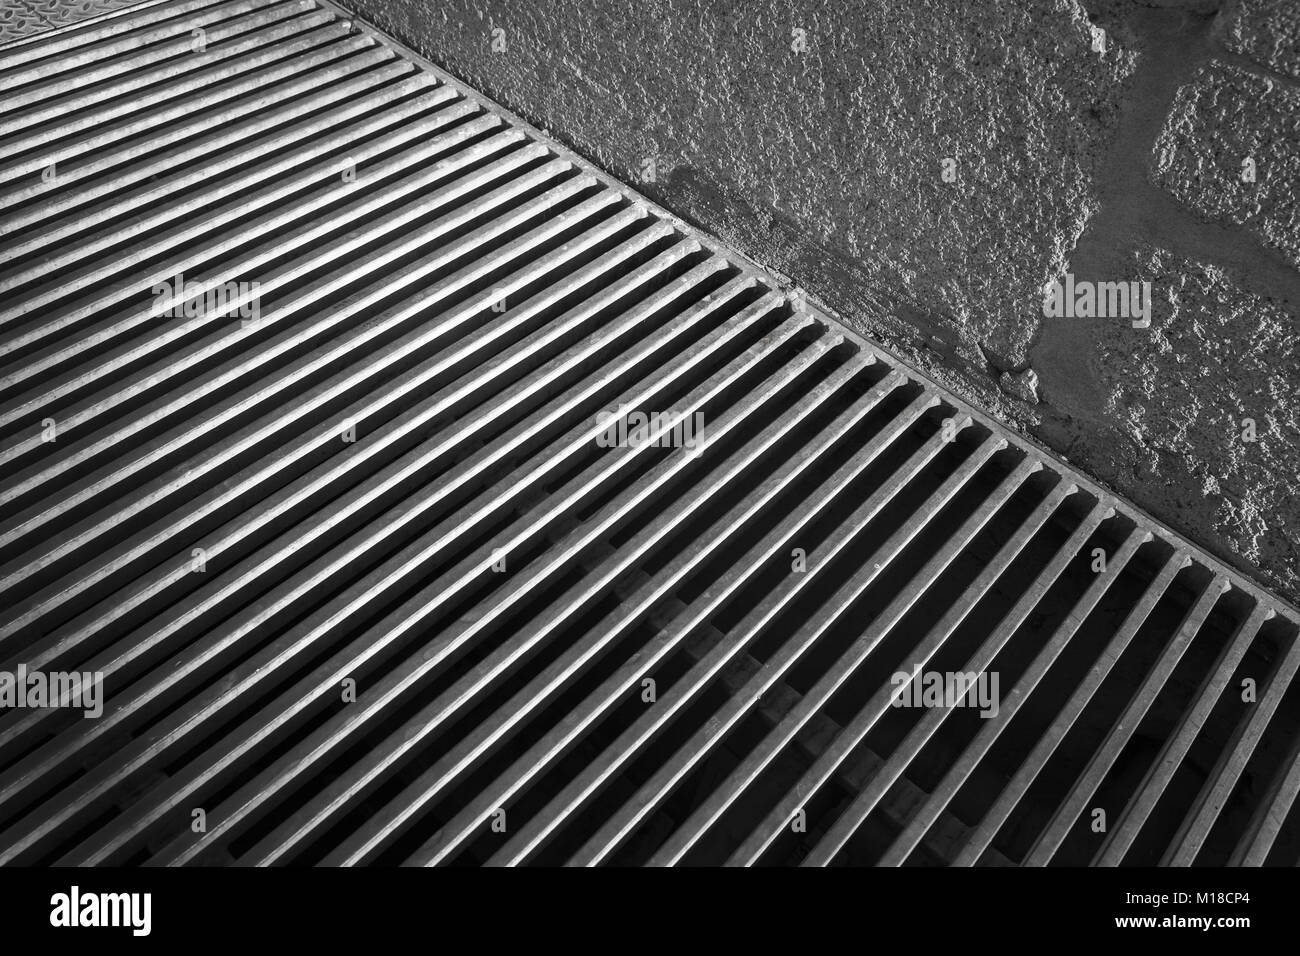 Caillebotis en acier du système de drainage urbain près de mur de béton, résumé de fond photo Banque D'Images